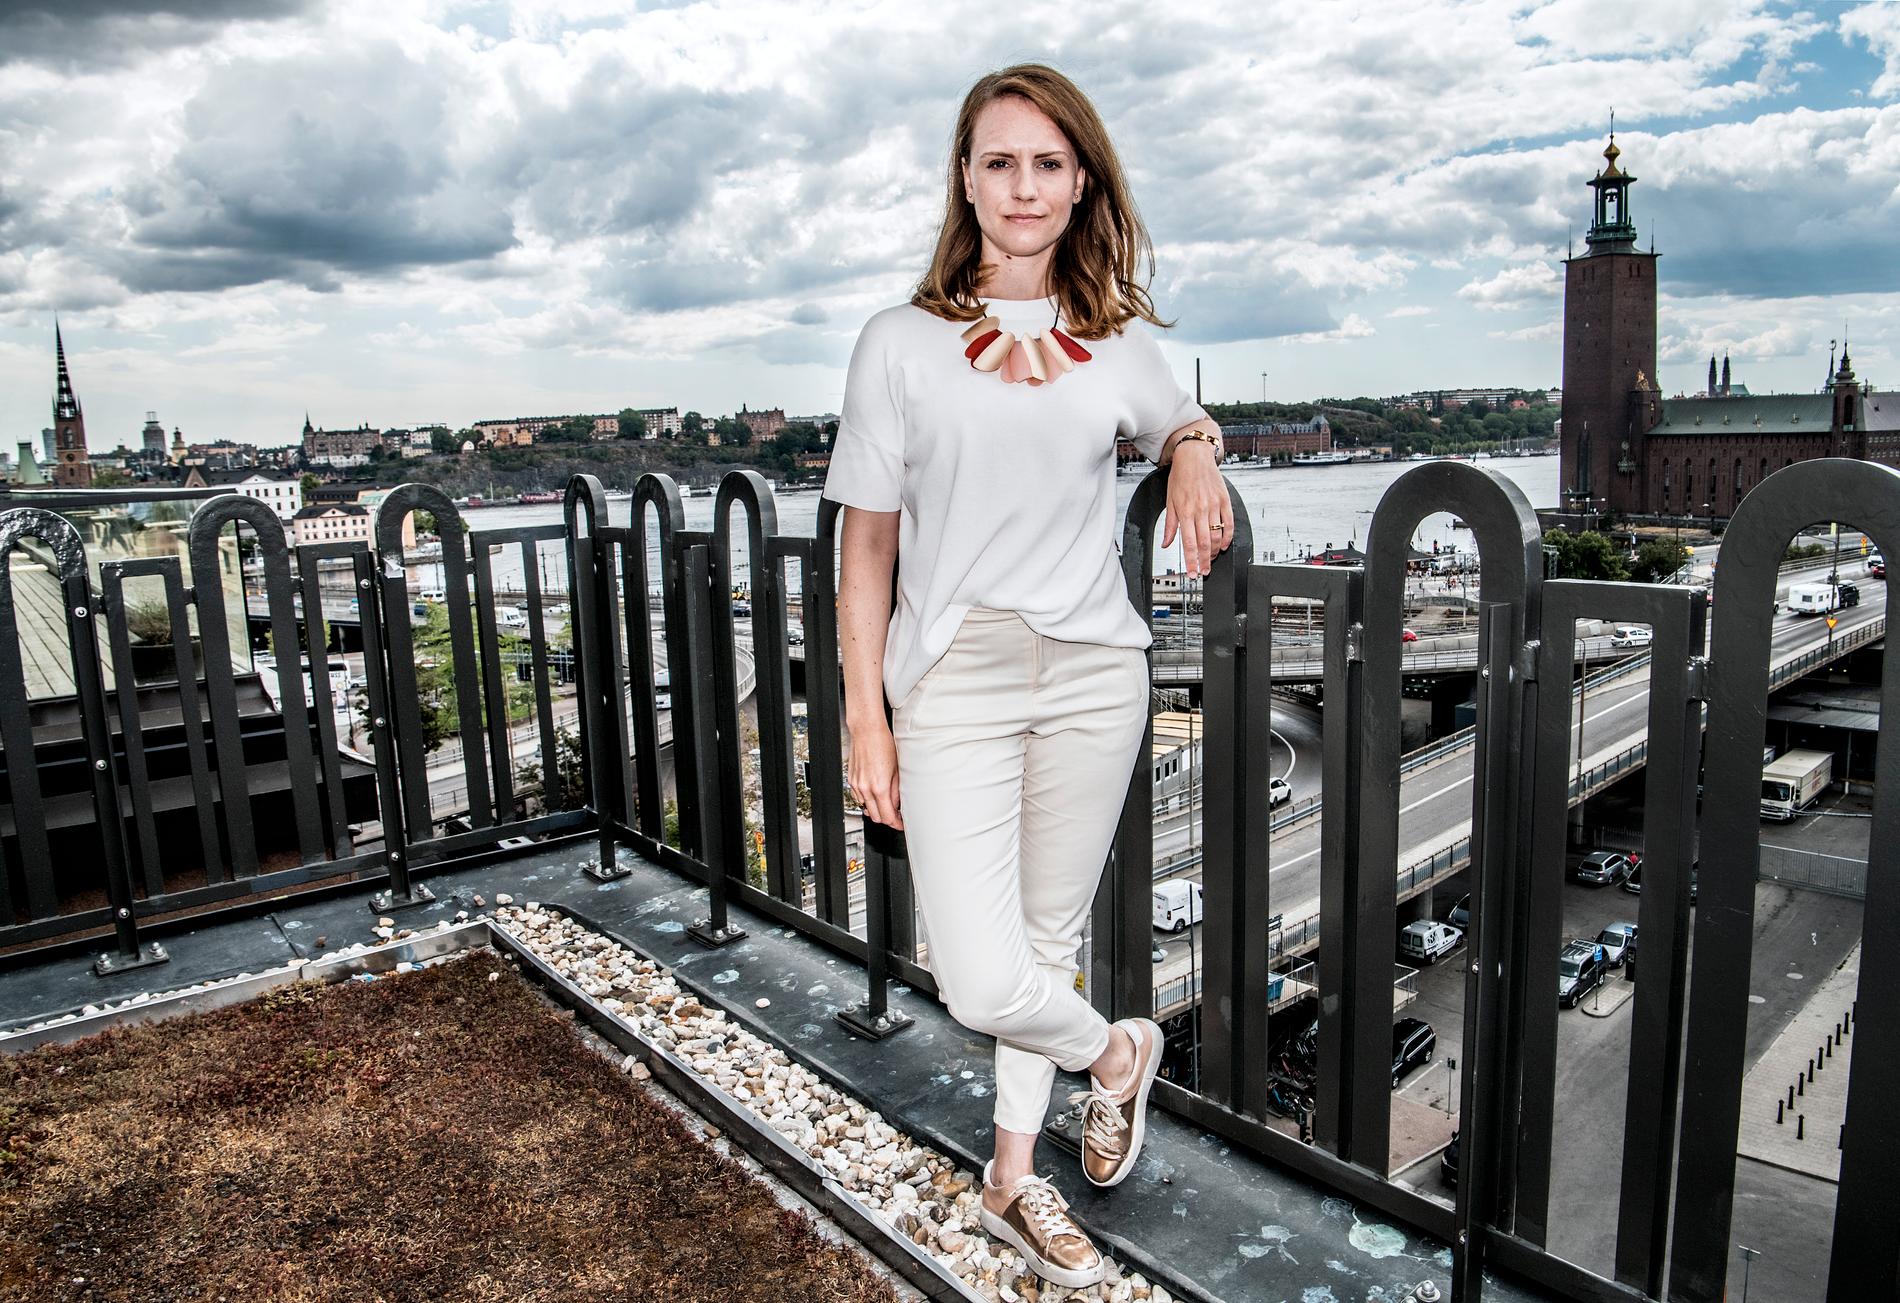 ”I Sverige har kvinnor generellt en lägre ställning när det kommer till ekonomi”‚ säger investeraren Sandra Bourbon.